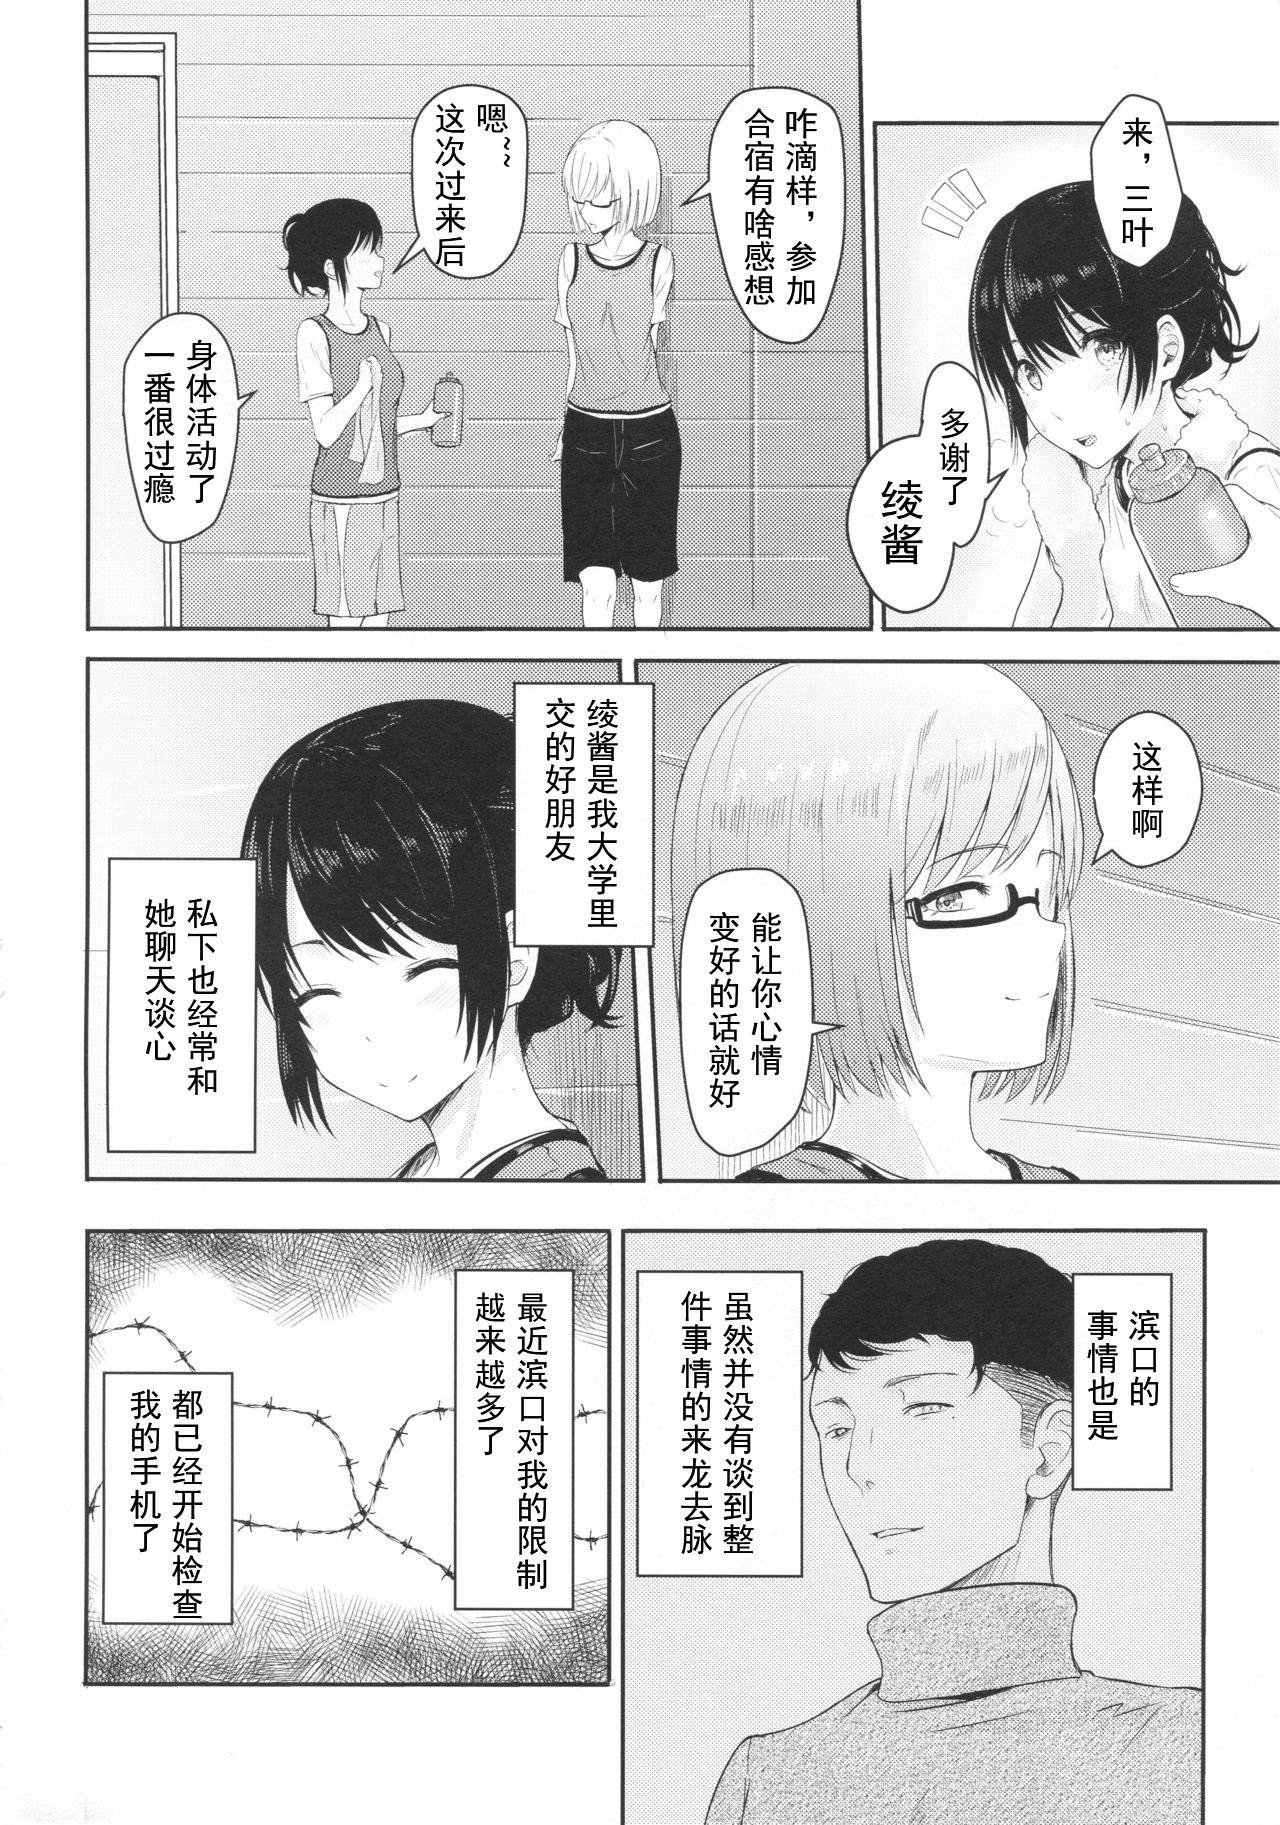 Heels Mitsuha - Kimi no na wa. Punishment - Page 3